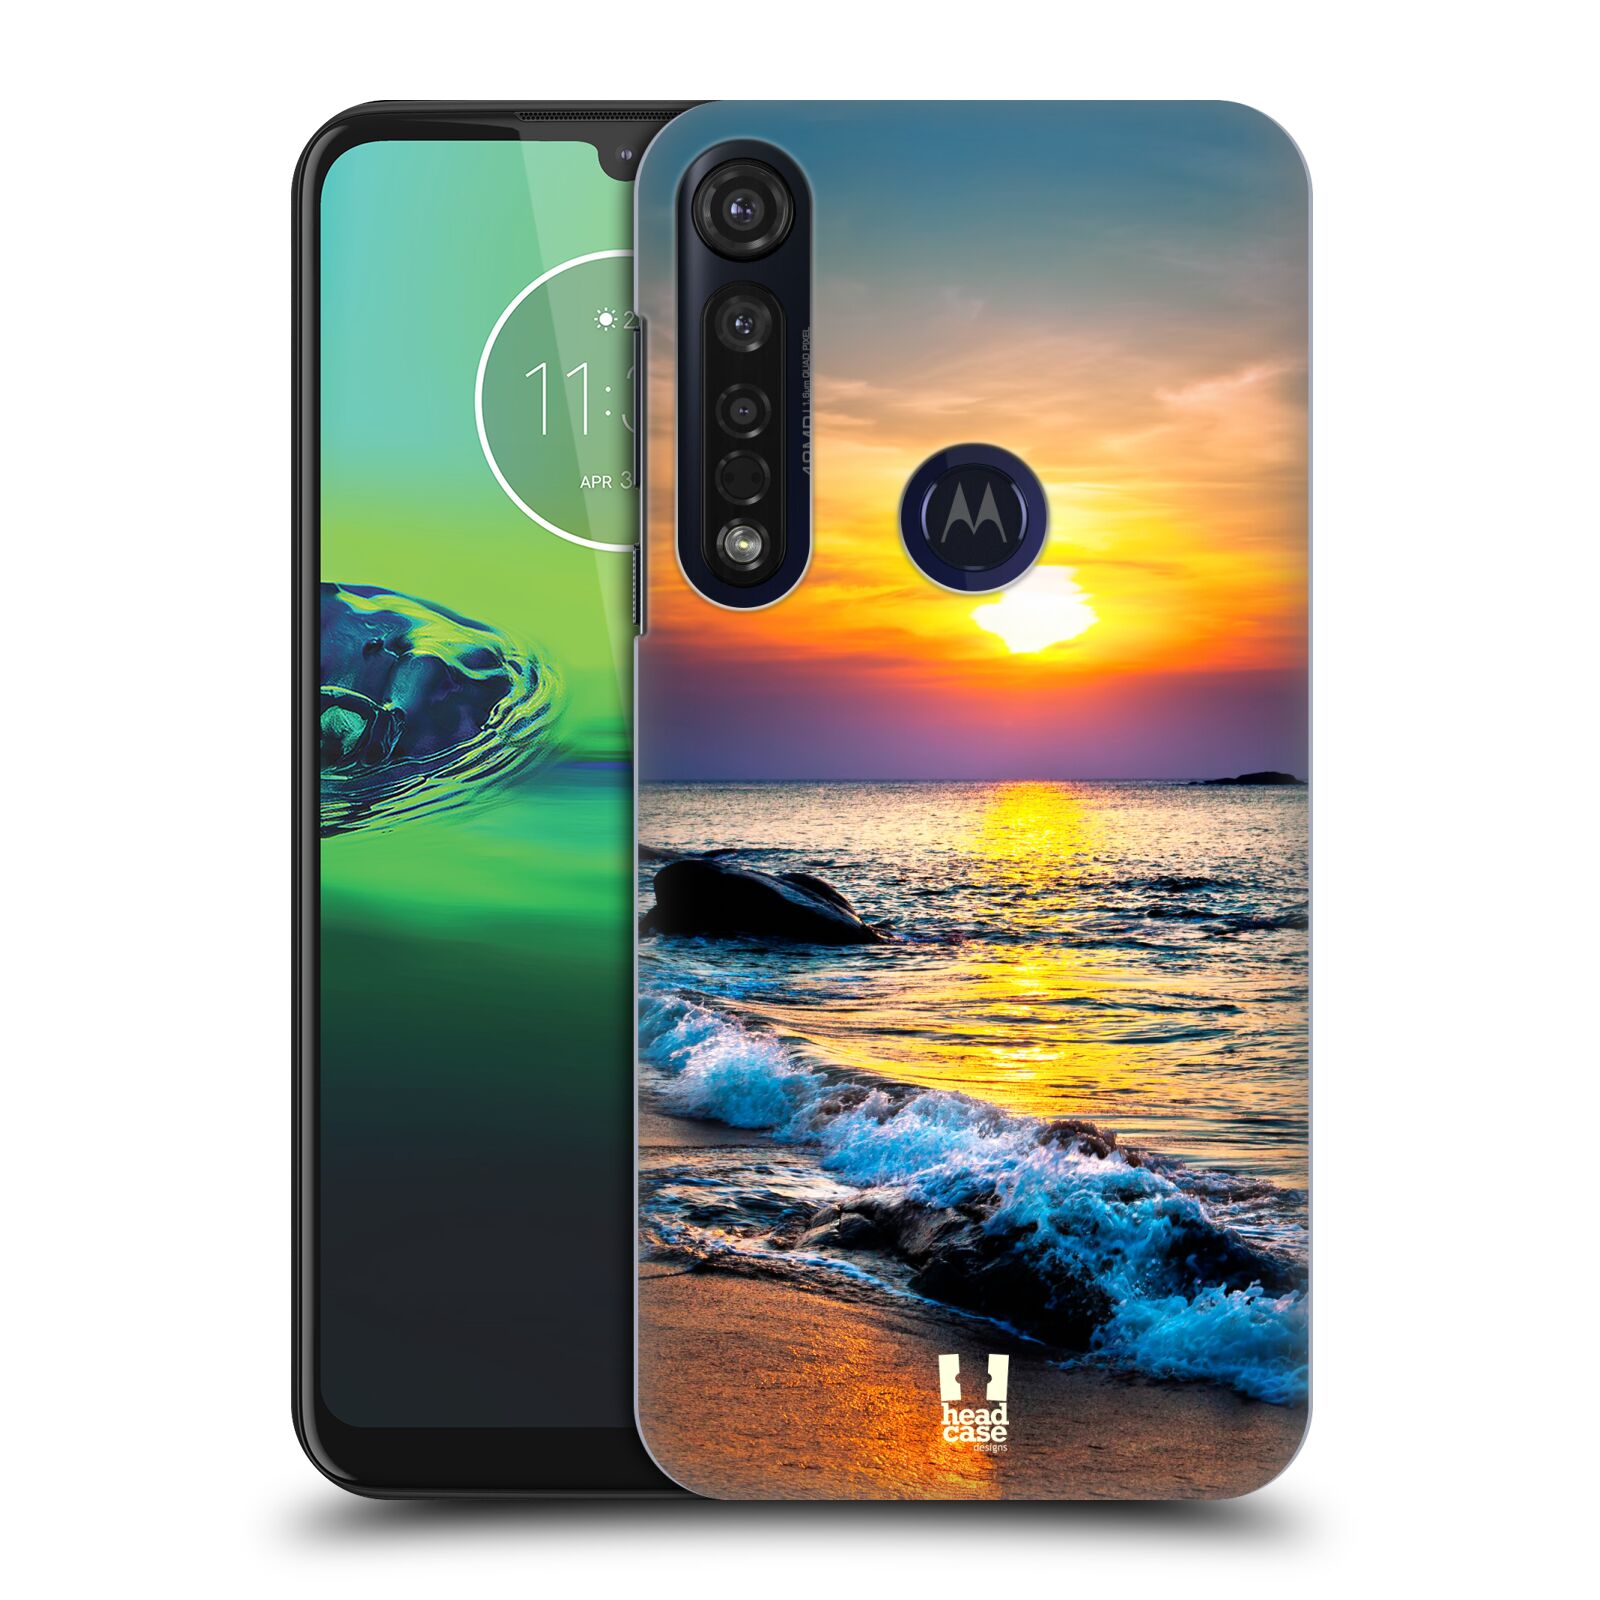 Pouzdro na mobil Motorola Moto G8 PLUS - HEAD CASE - vzor Pláže a Moře barevný západ slunce